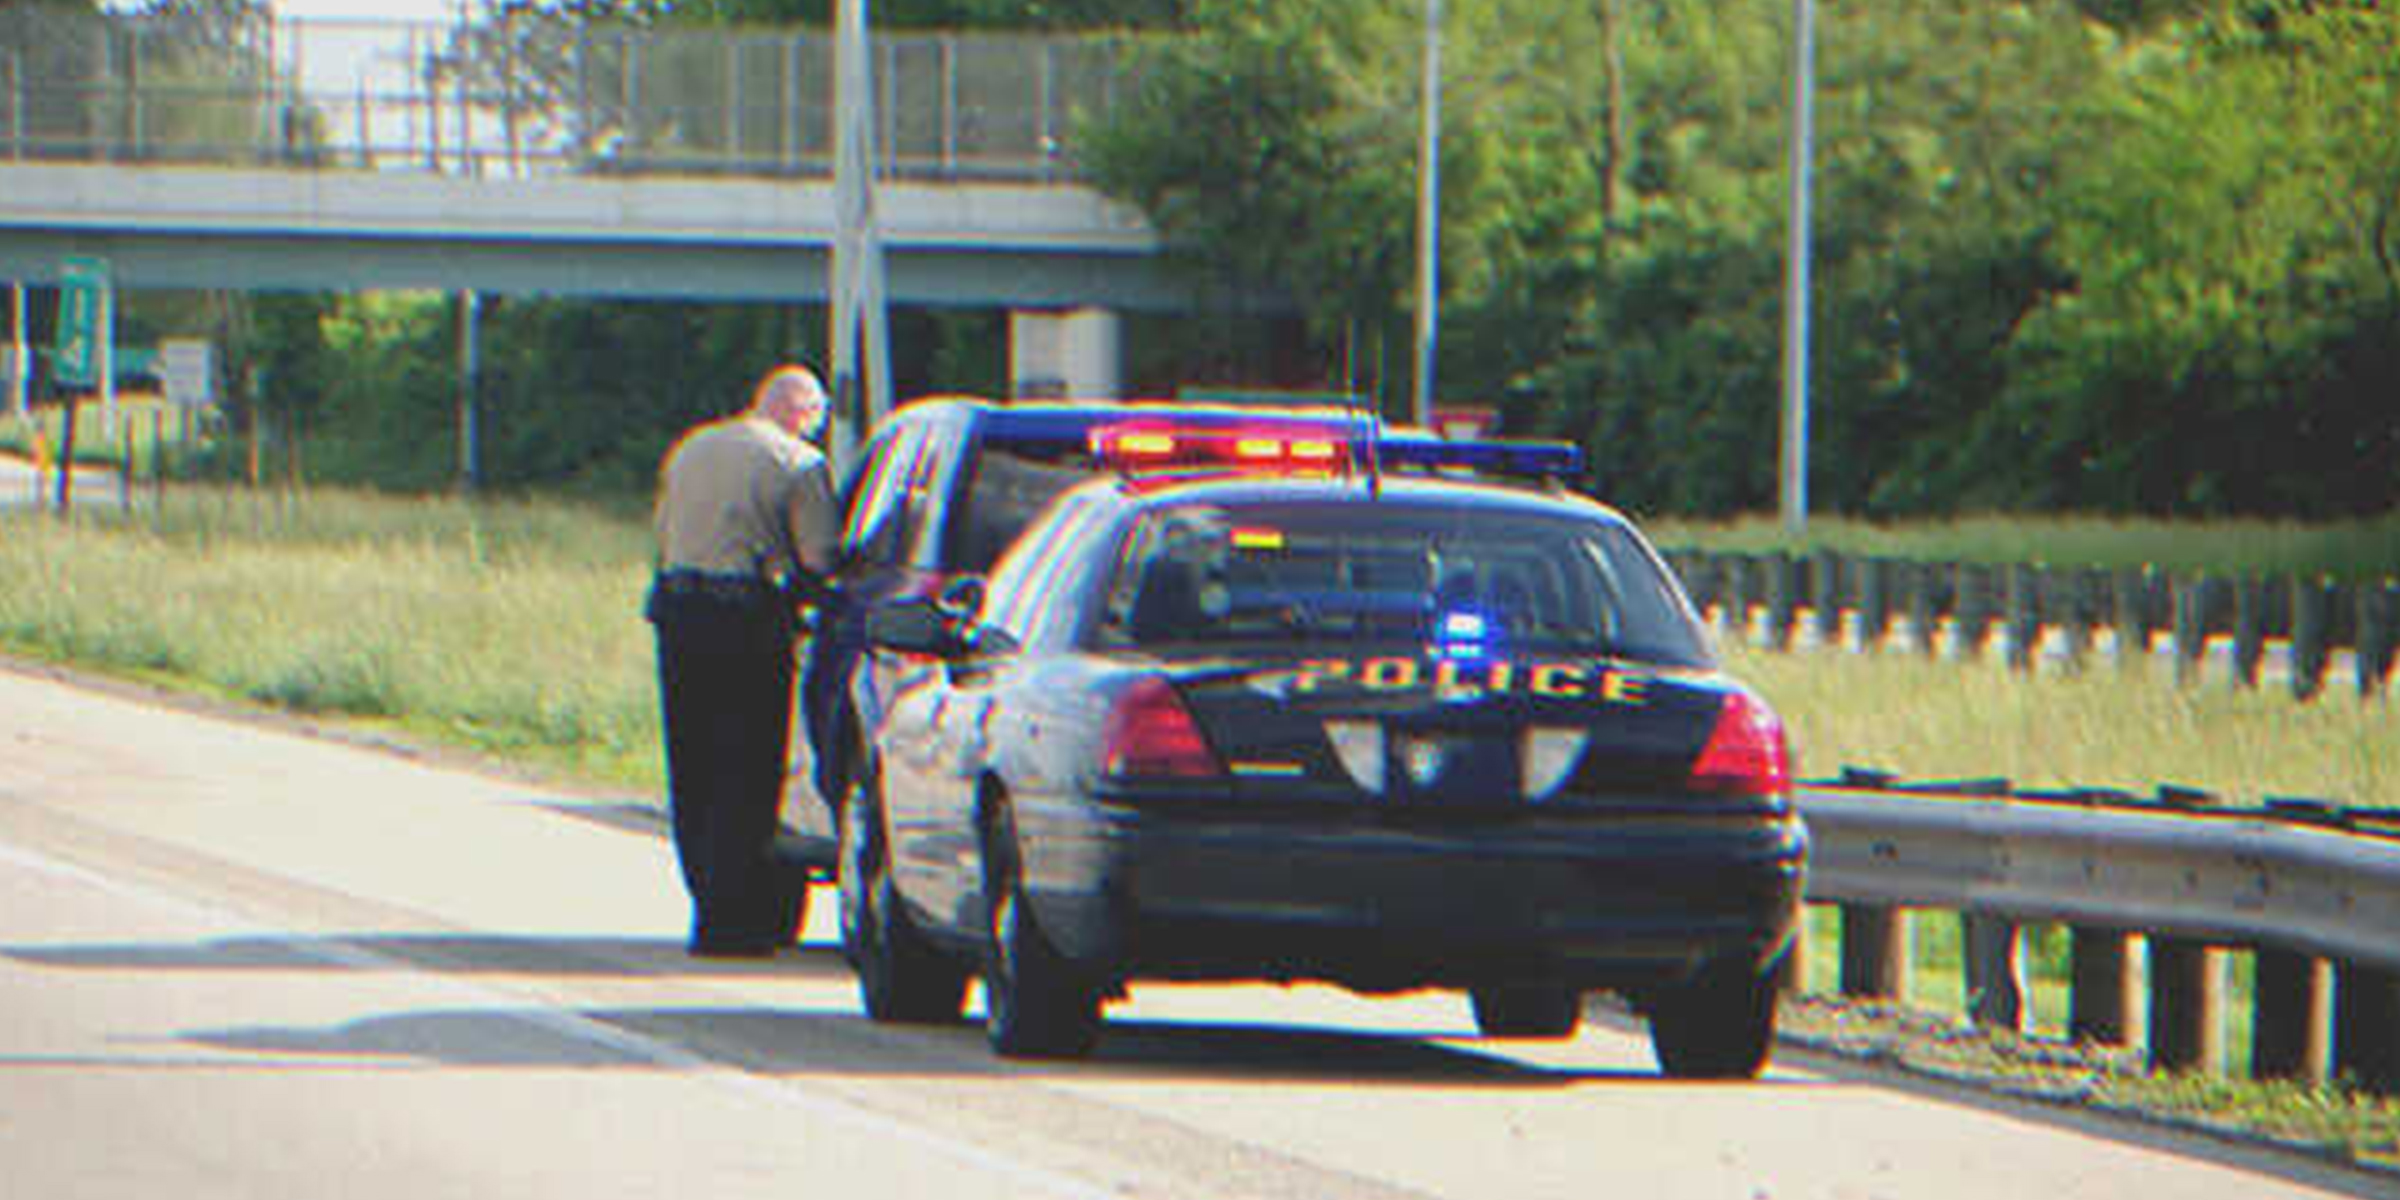 Un policía deteniendo a una persona en la carretera | Foto: Shutterstock